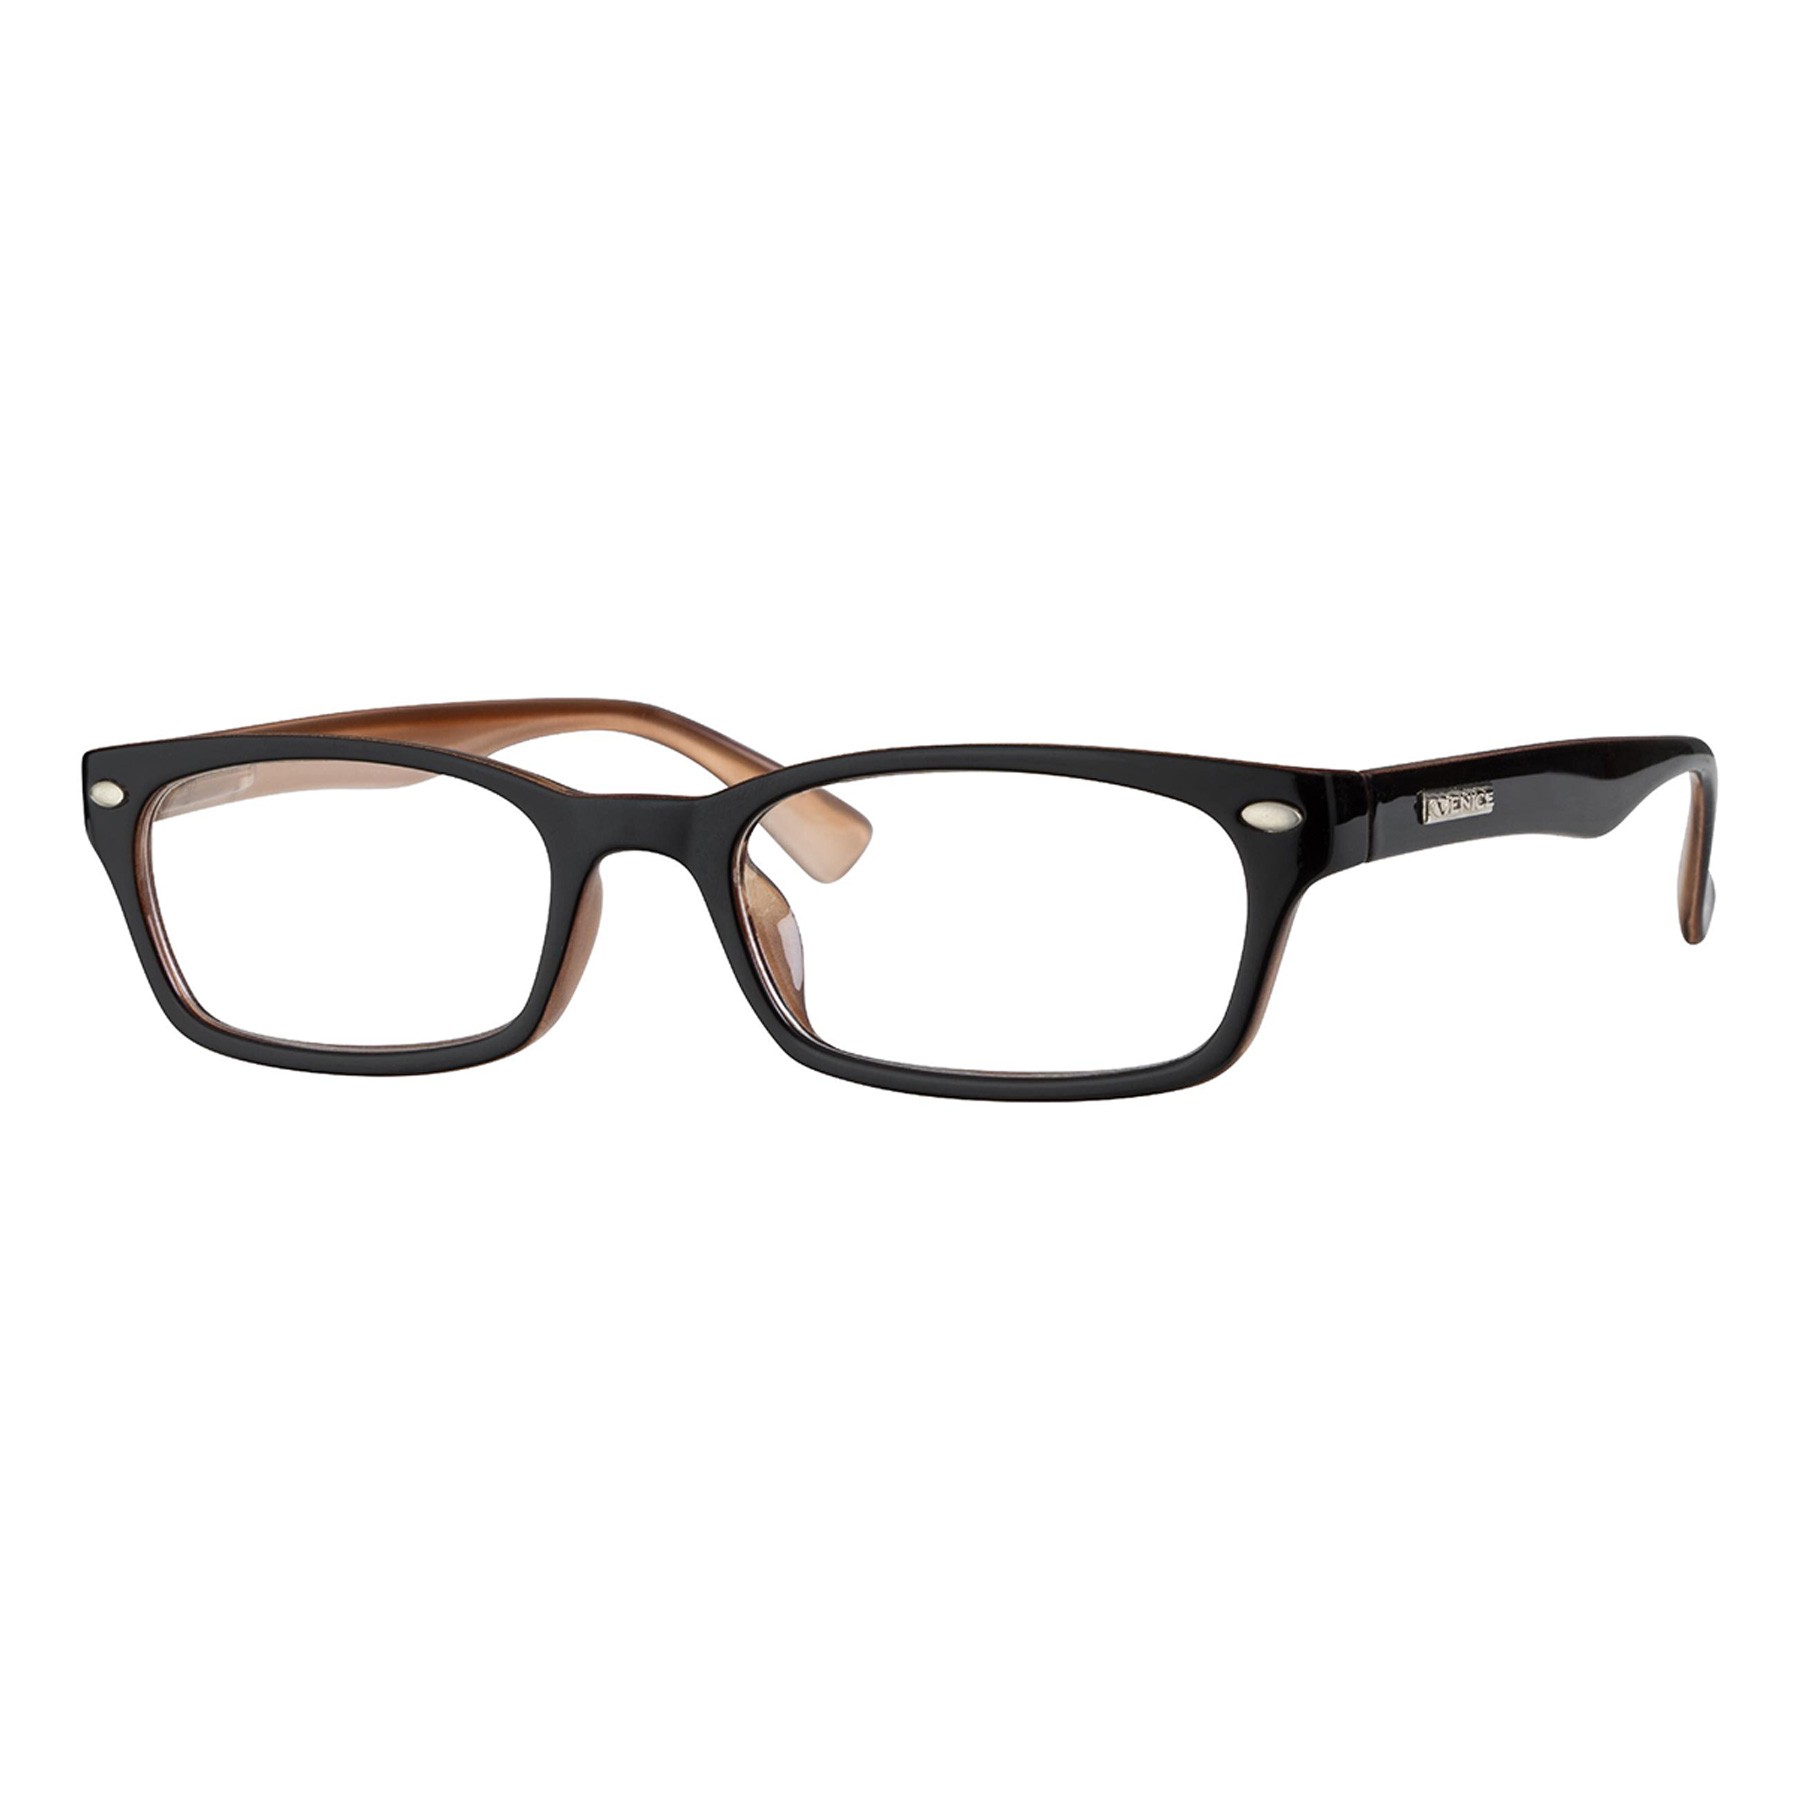 Iaview gafa de presbicia mini WAY marrón +2,00